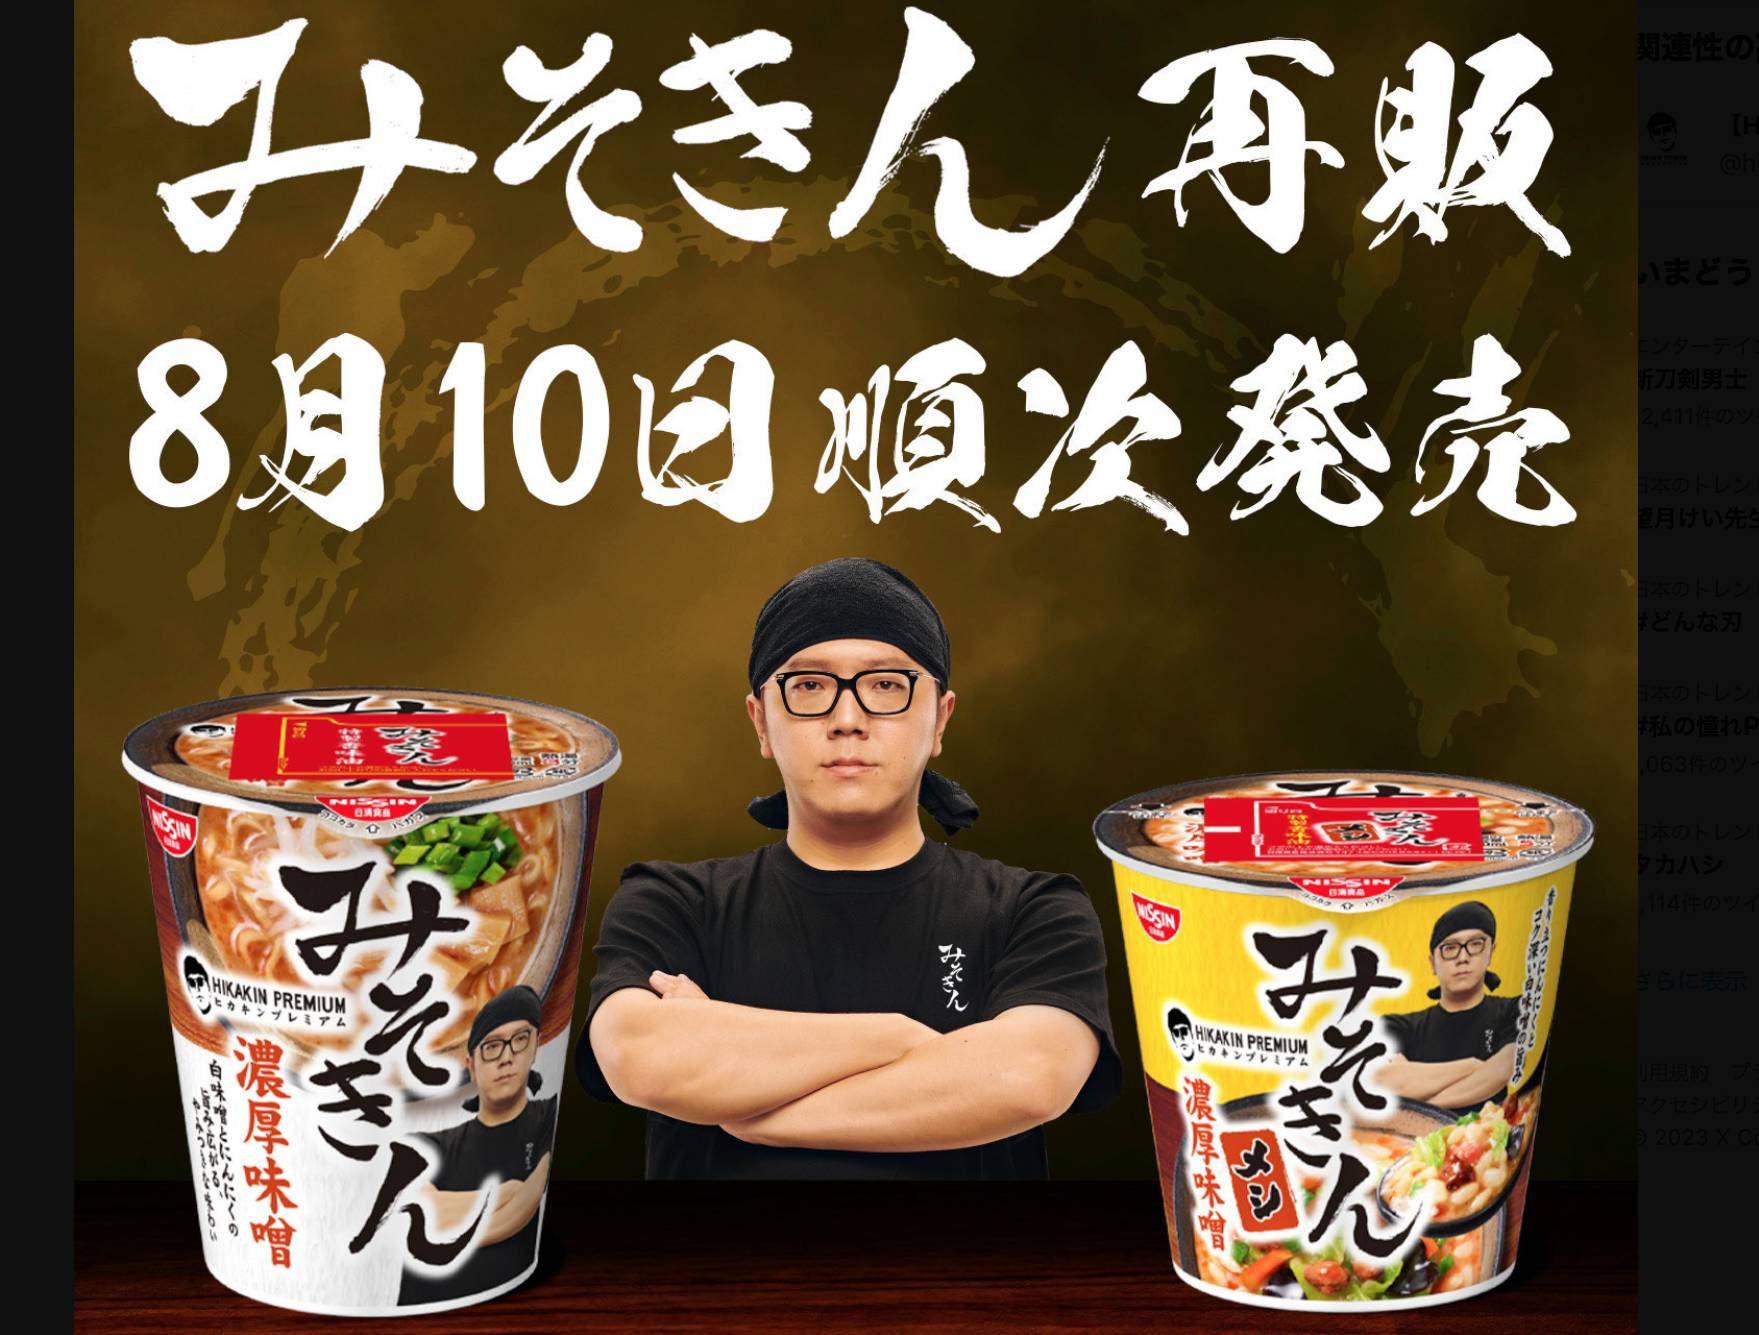 ヒカキンのカップ麺「みそきん」、8月10日に再販開始 - モデルプレス